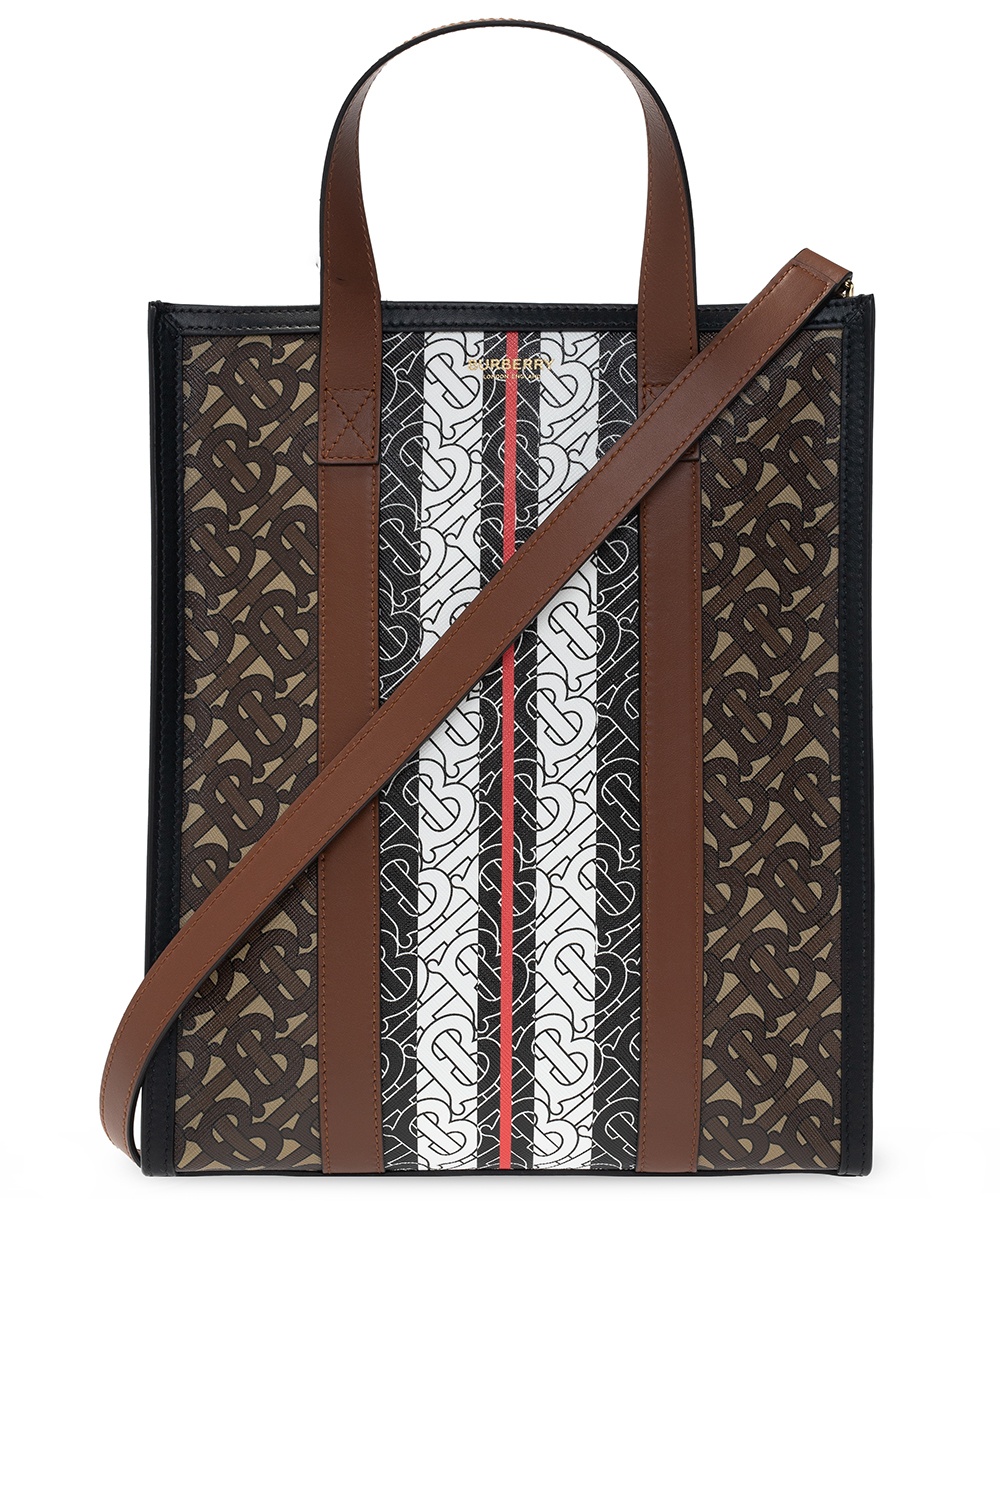 Burberry ‘Book’ tote bag | Women's Bags | Vitkac